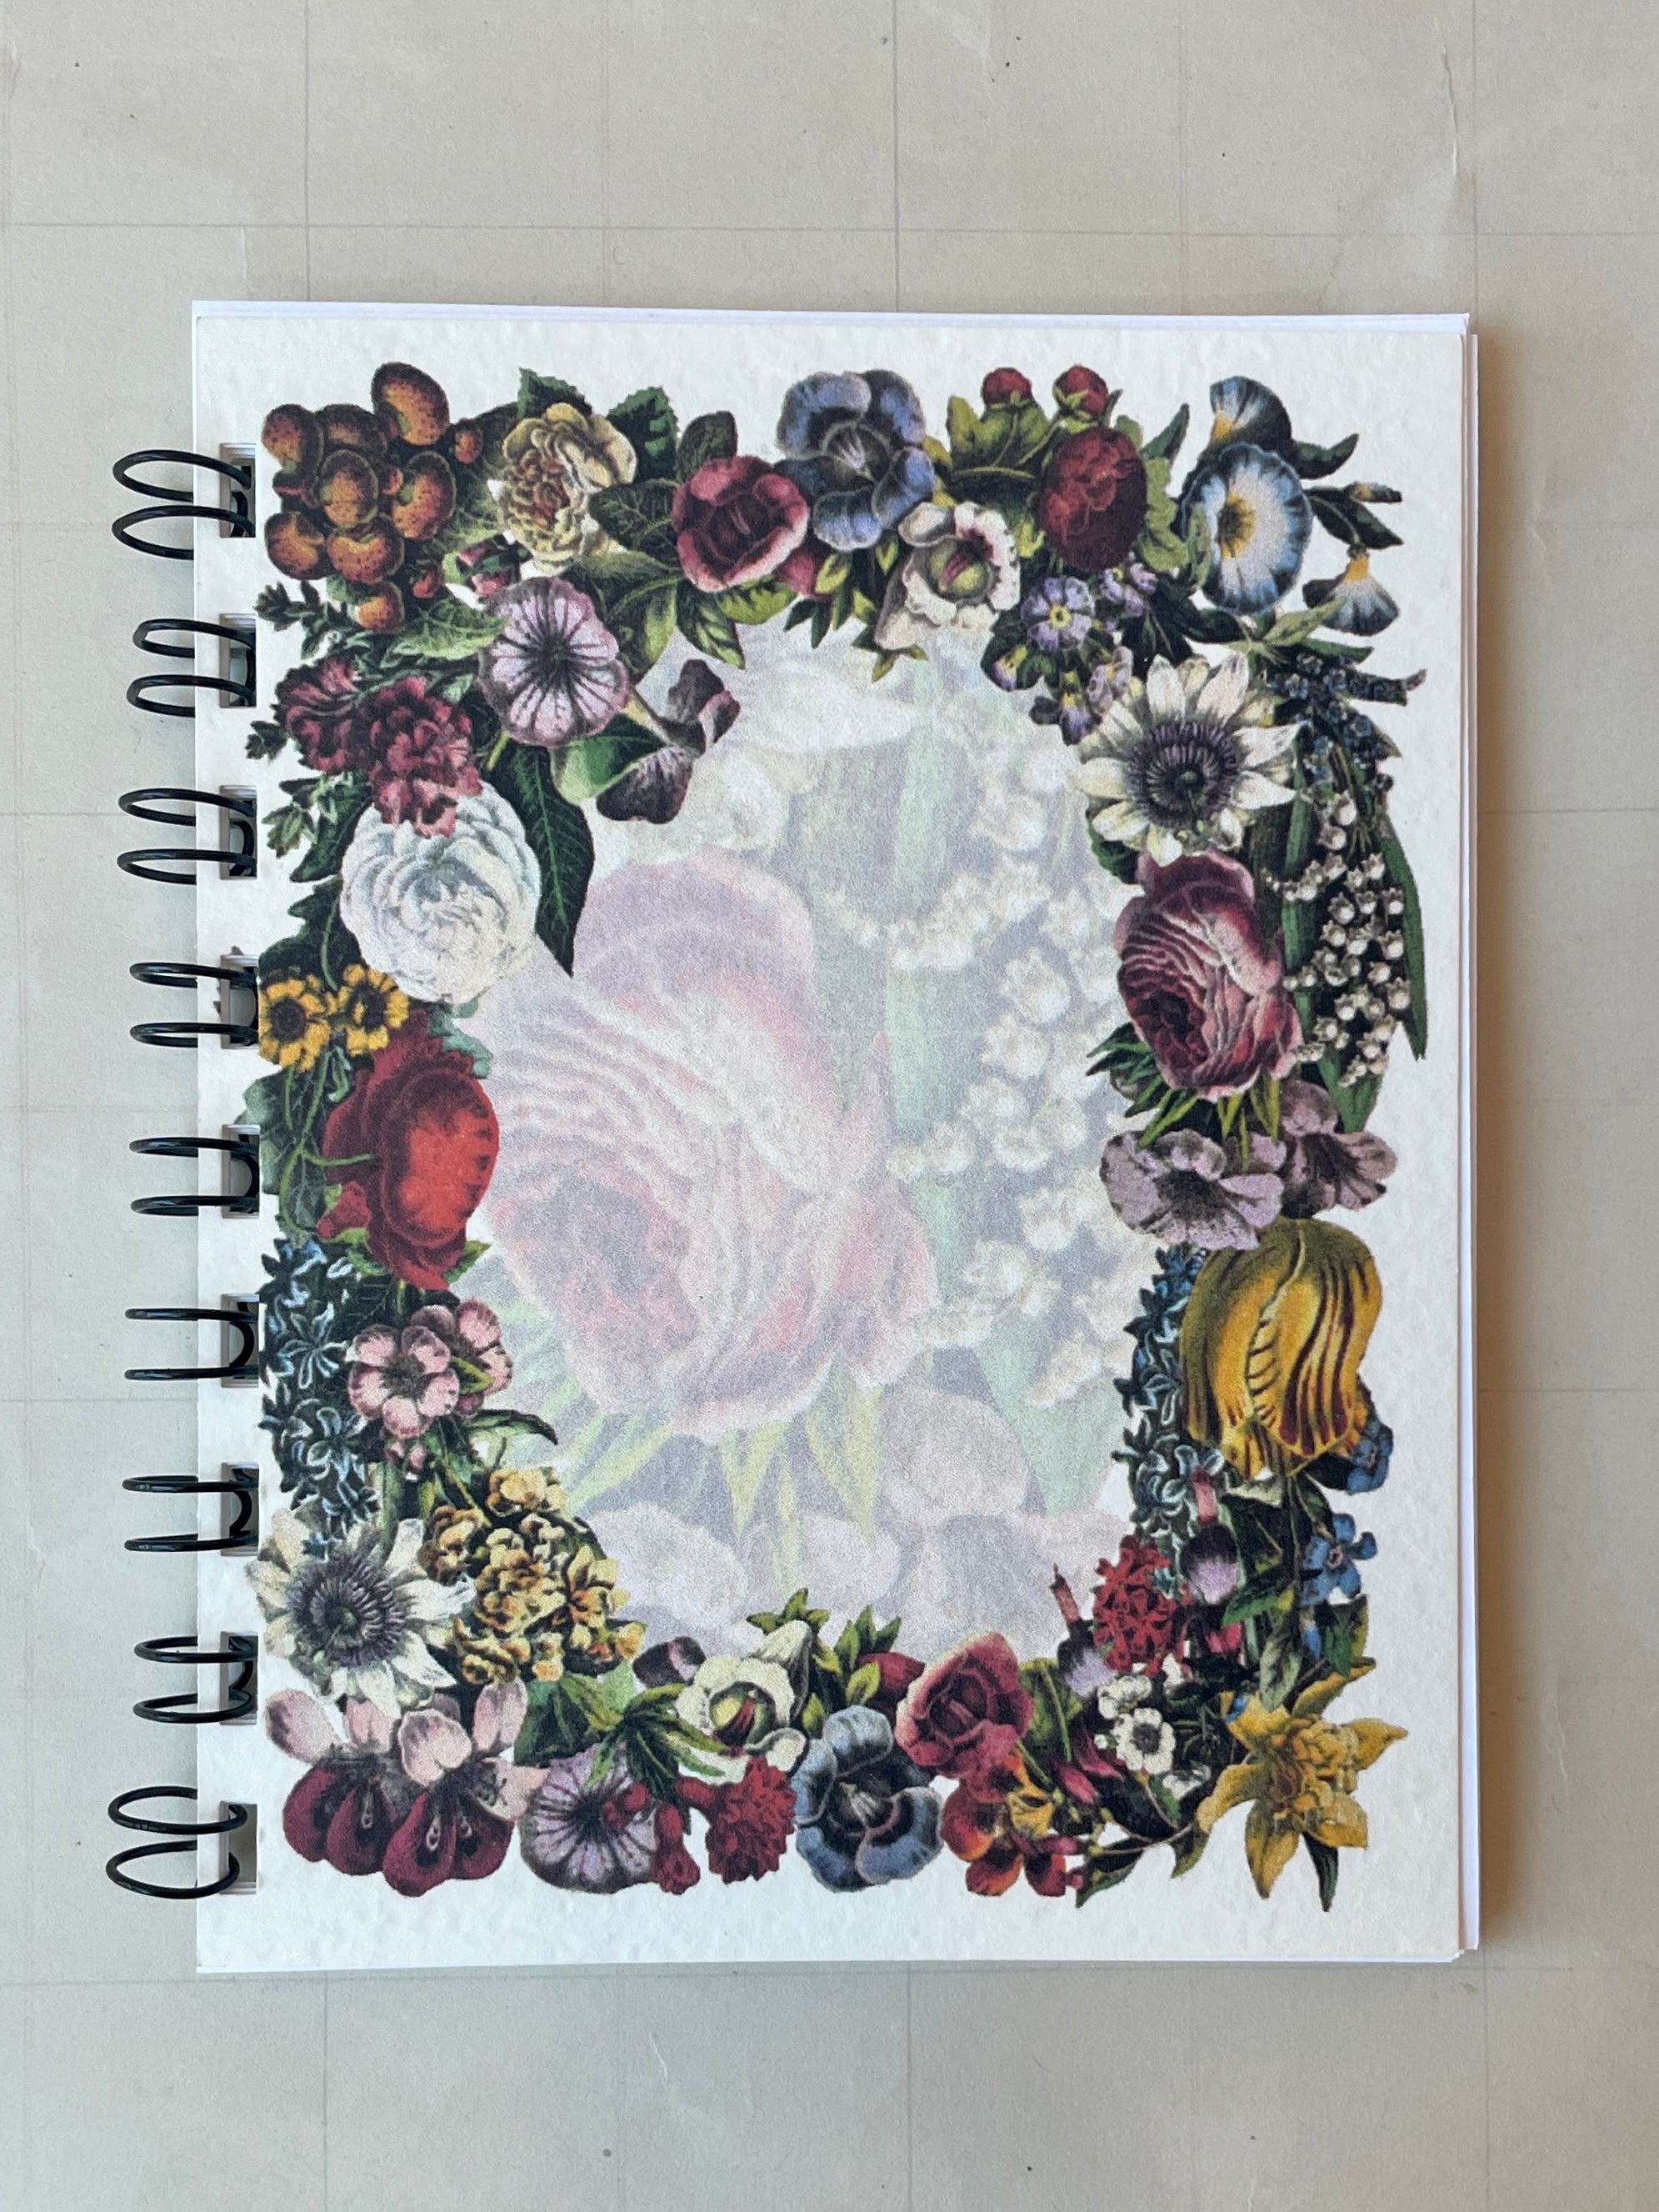 Floral Frame Notebook